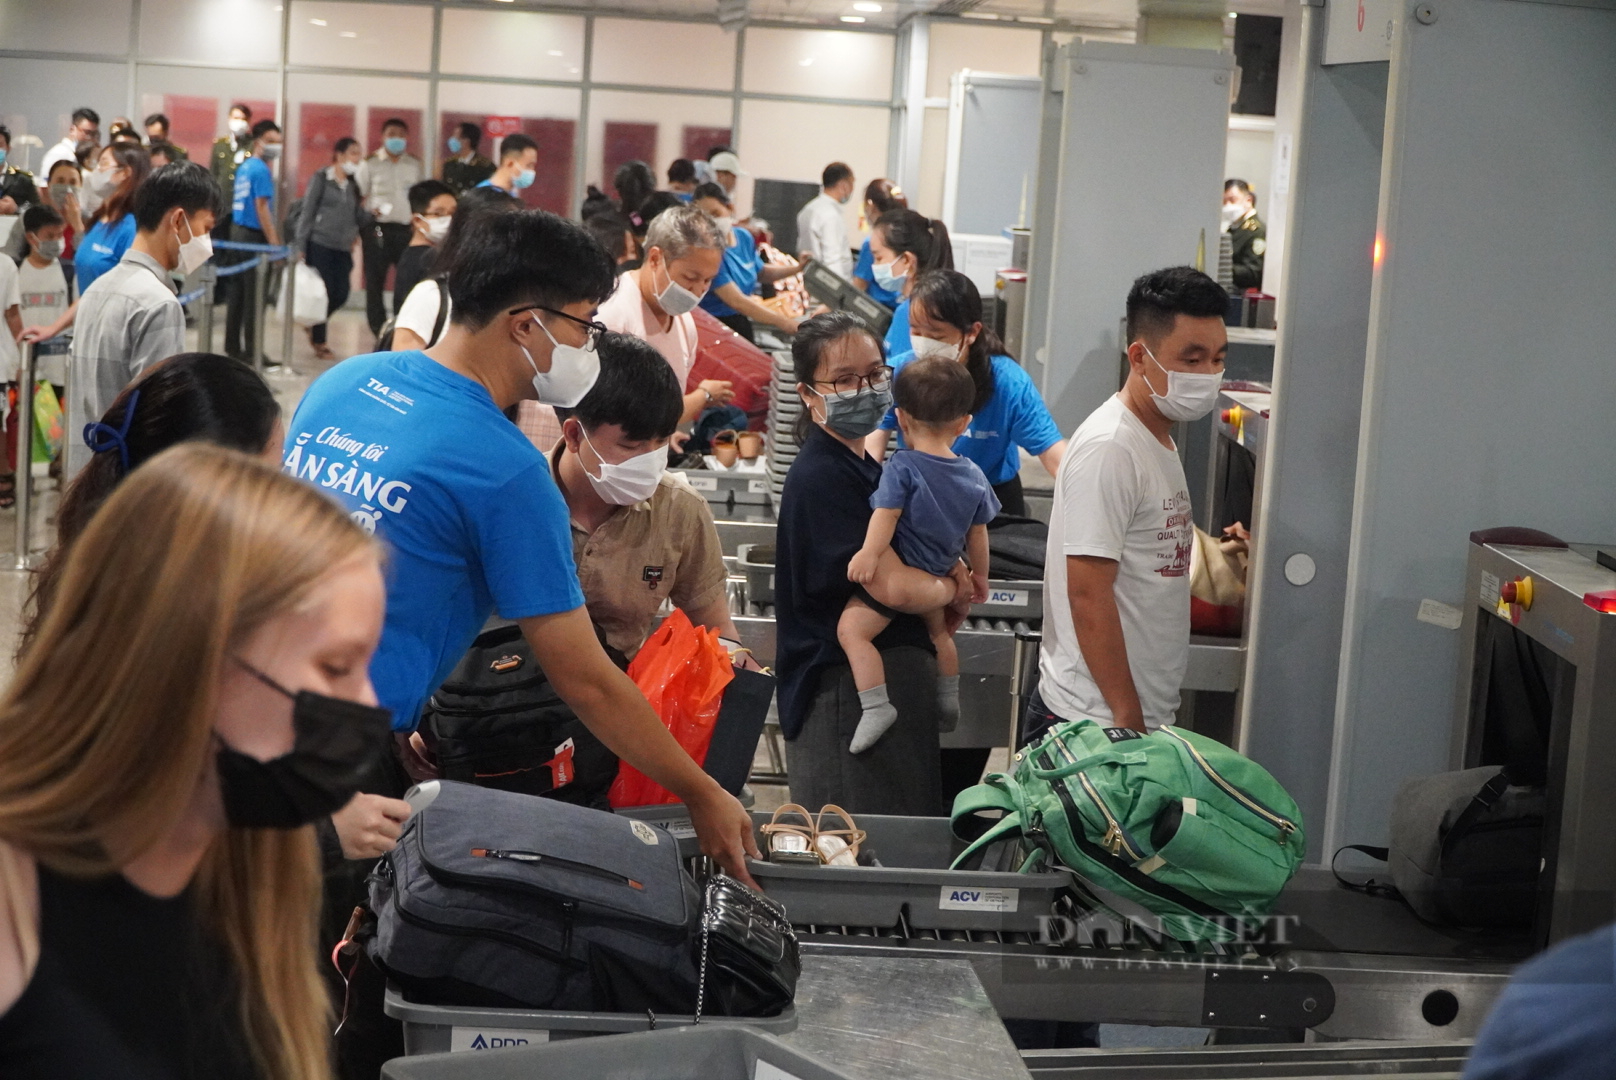 Tiếp tục các giải pháp kéo giảm ùn tắc tại sân bay Tân Sơn Nhất - Ảnh 2.